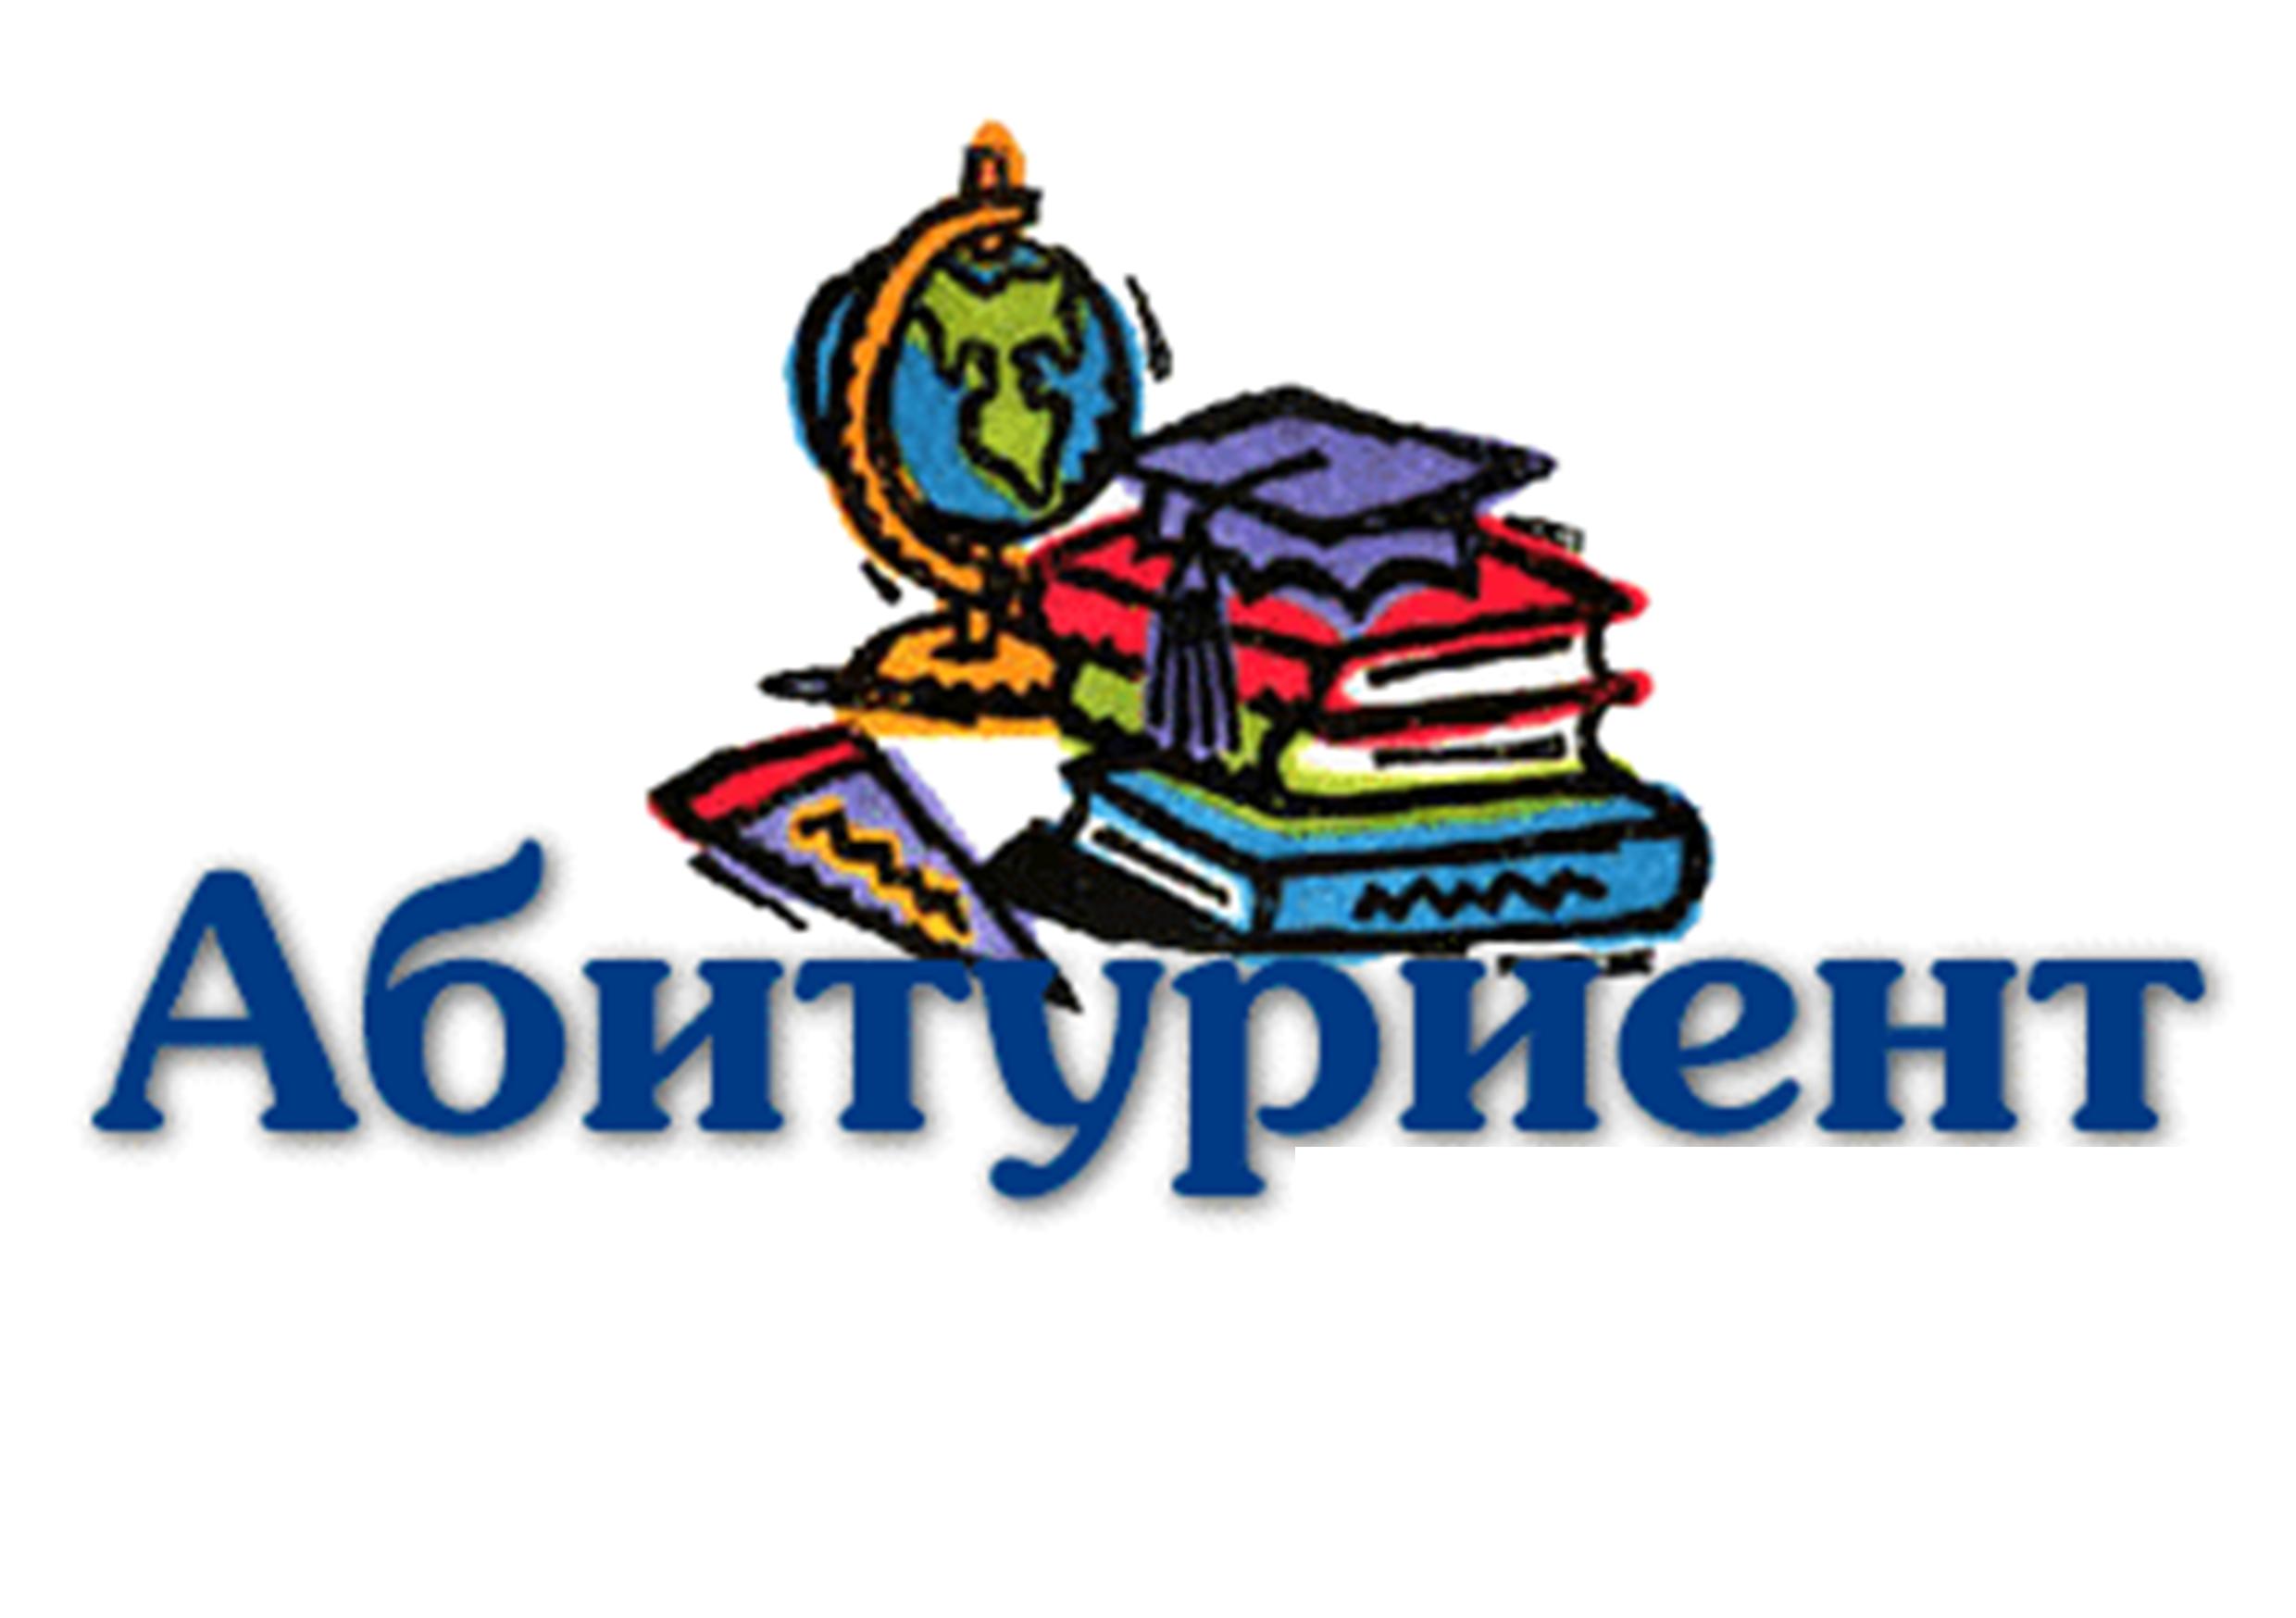 Сибирский государственный технологический университет